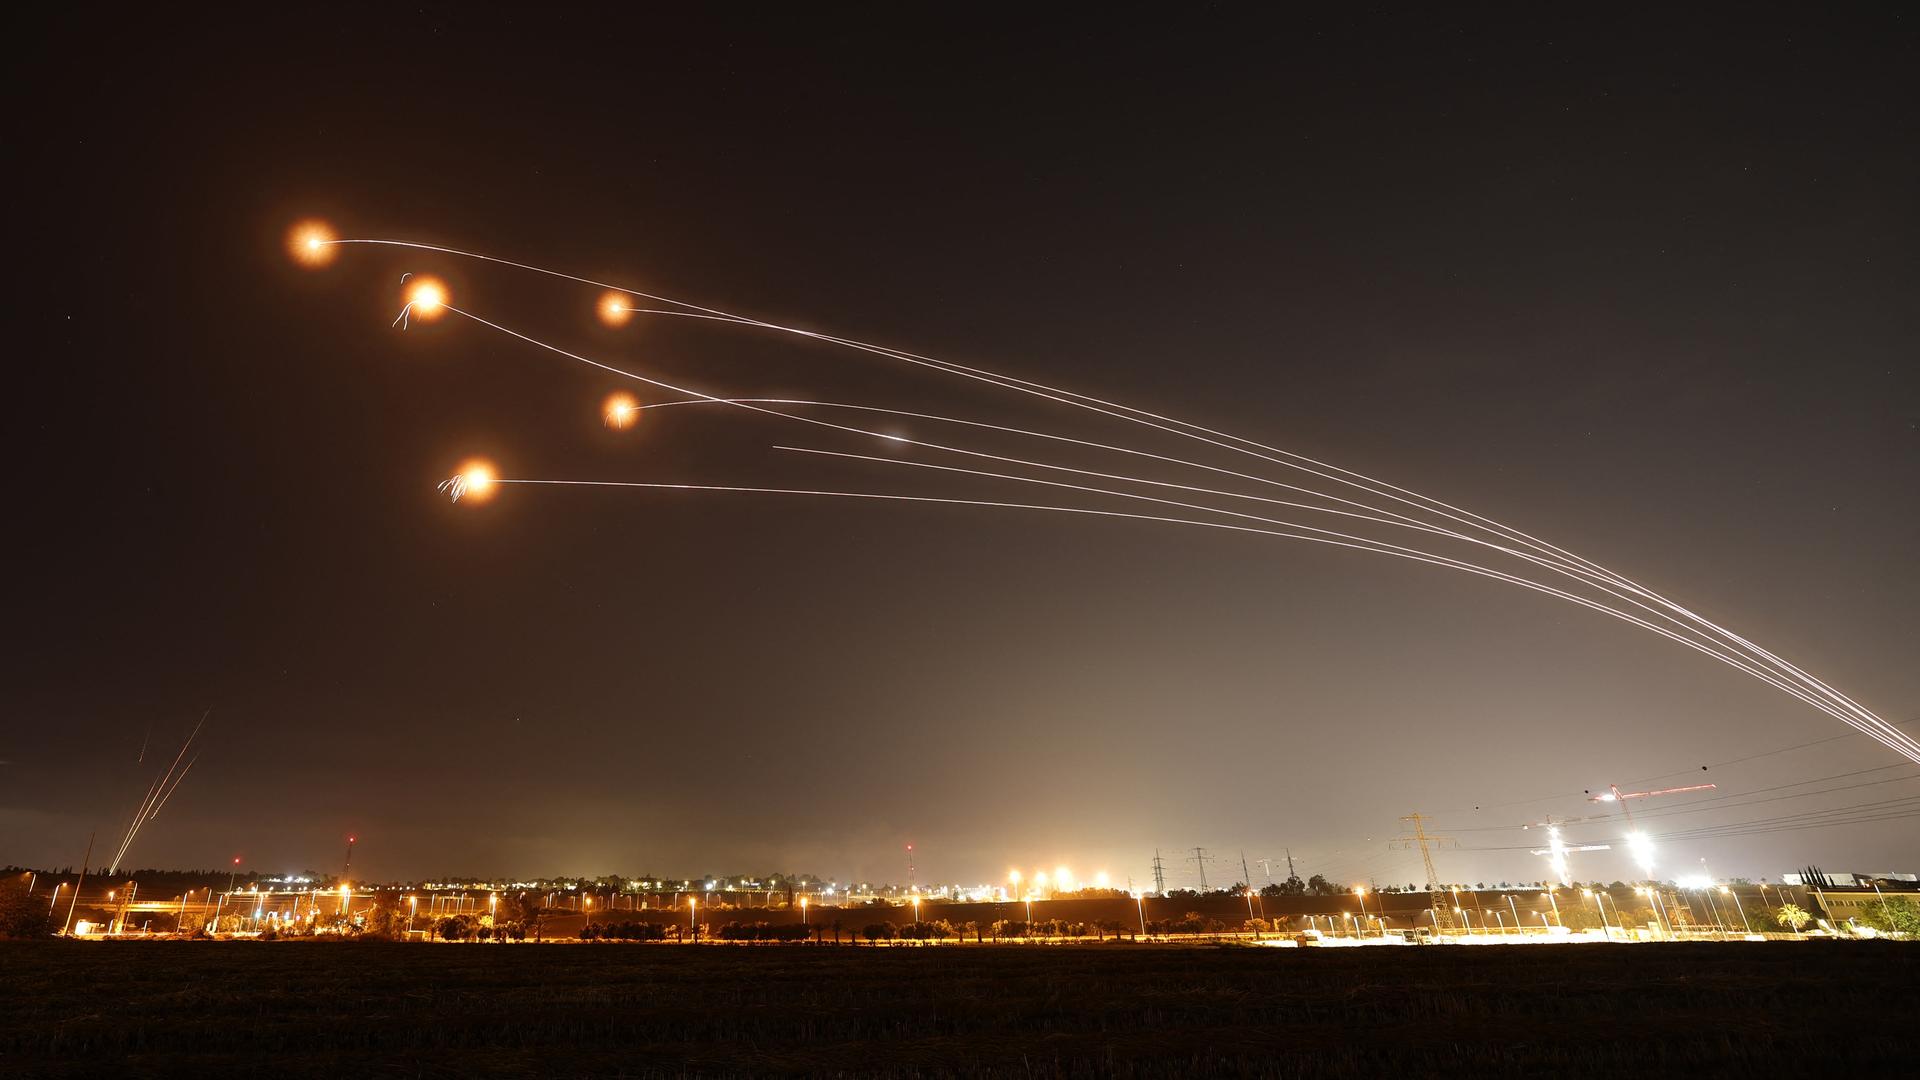 Das israelische Flugabwehrsystem "Iron Dome" schießt Raketen ab. Im nächtlichen Himmel sind helle Blitze von Explosionen zu sehen